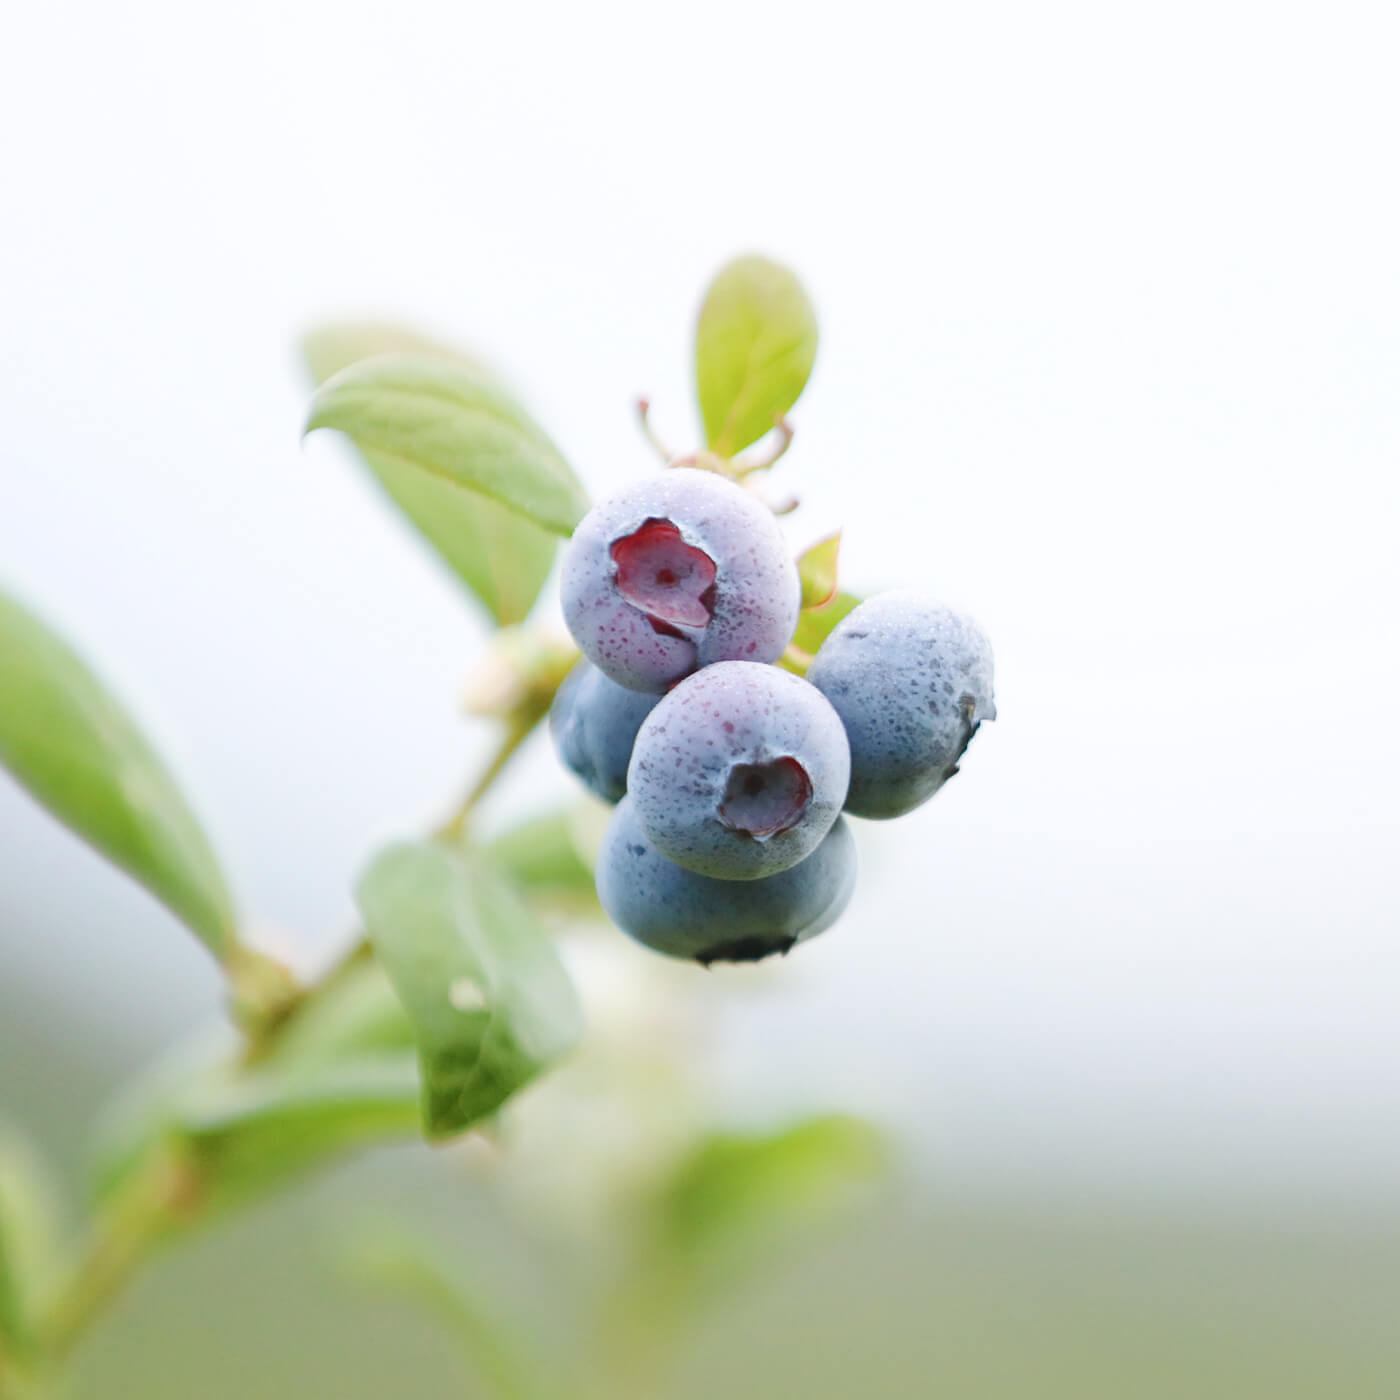 Image of blueberry on bush